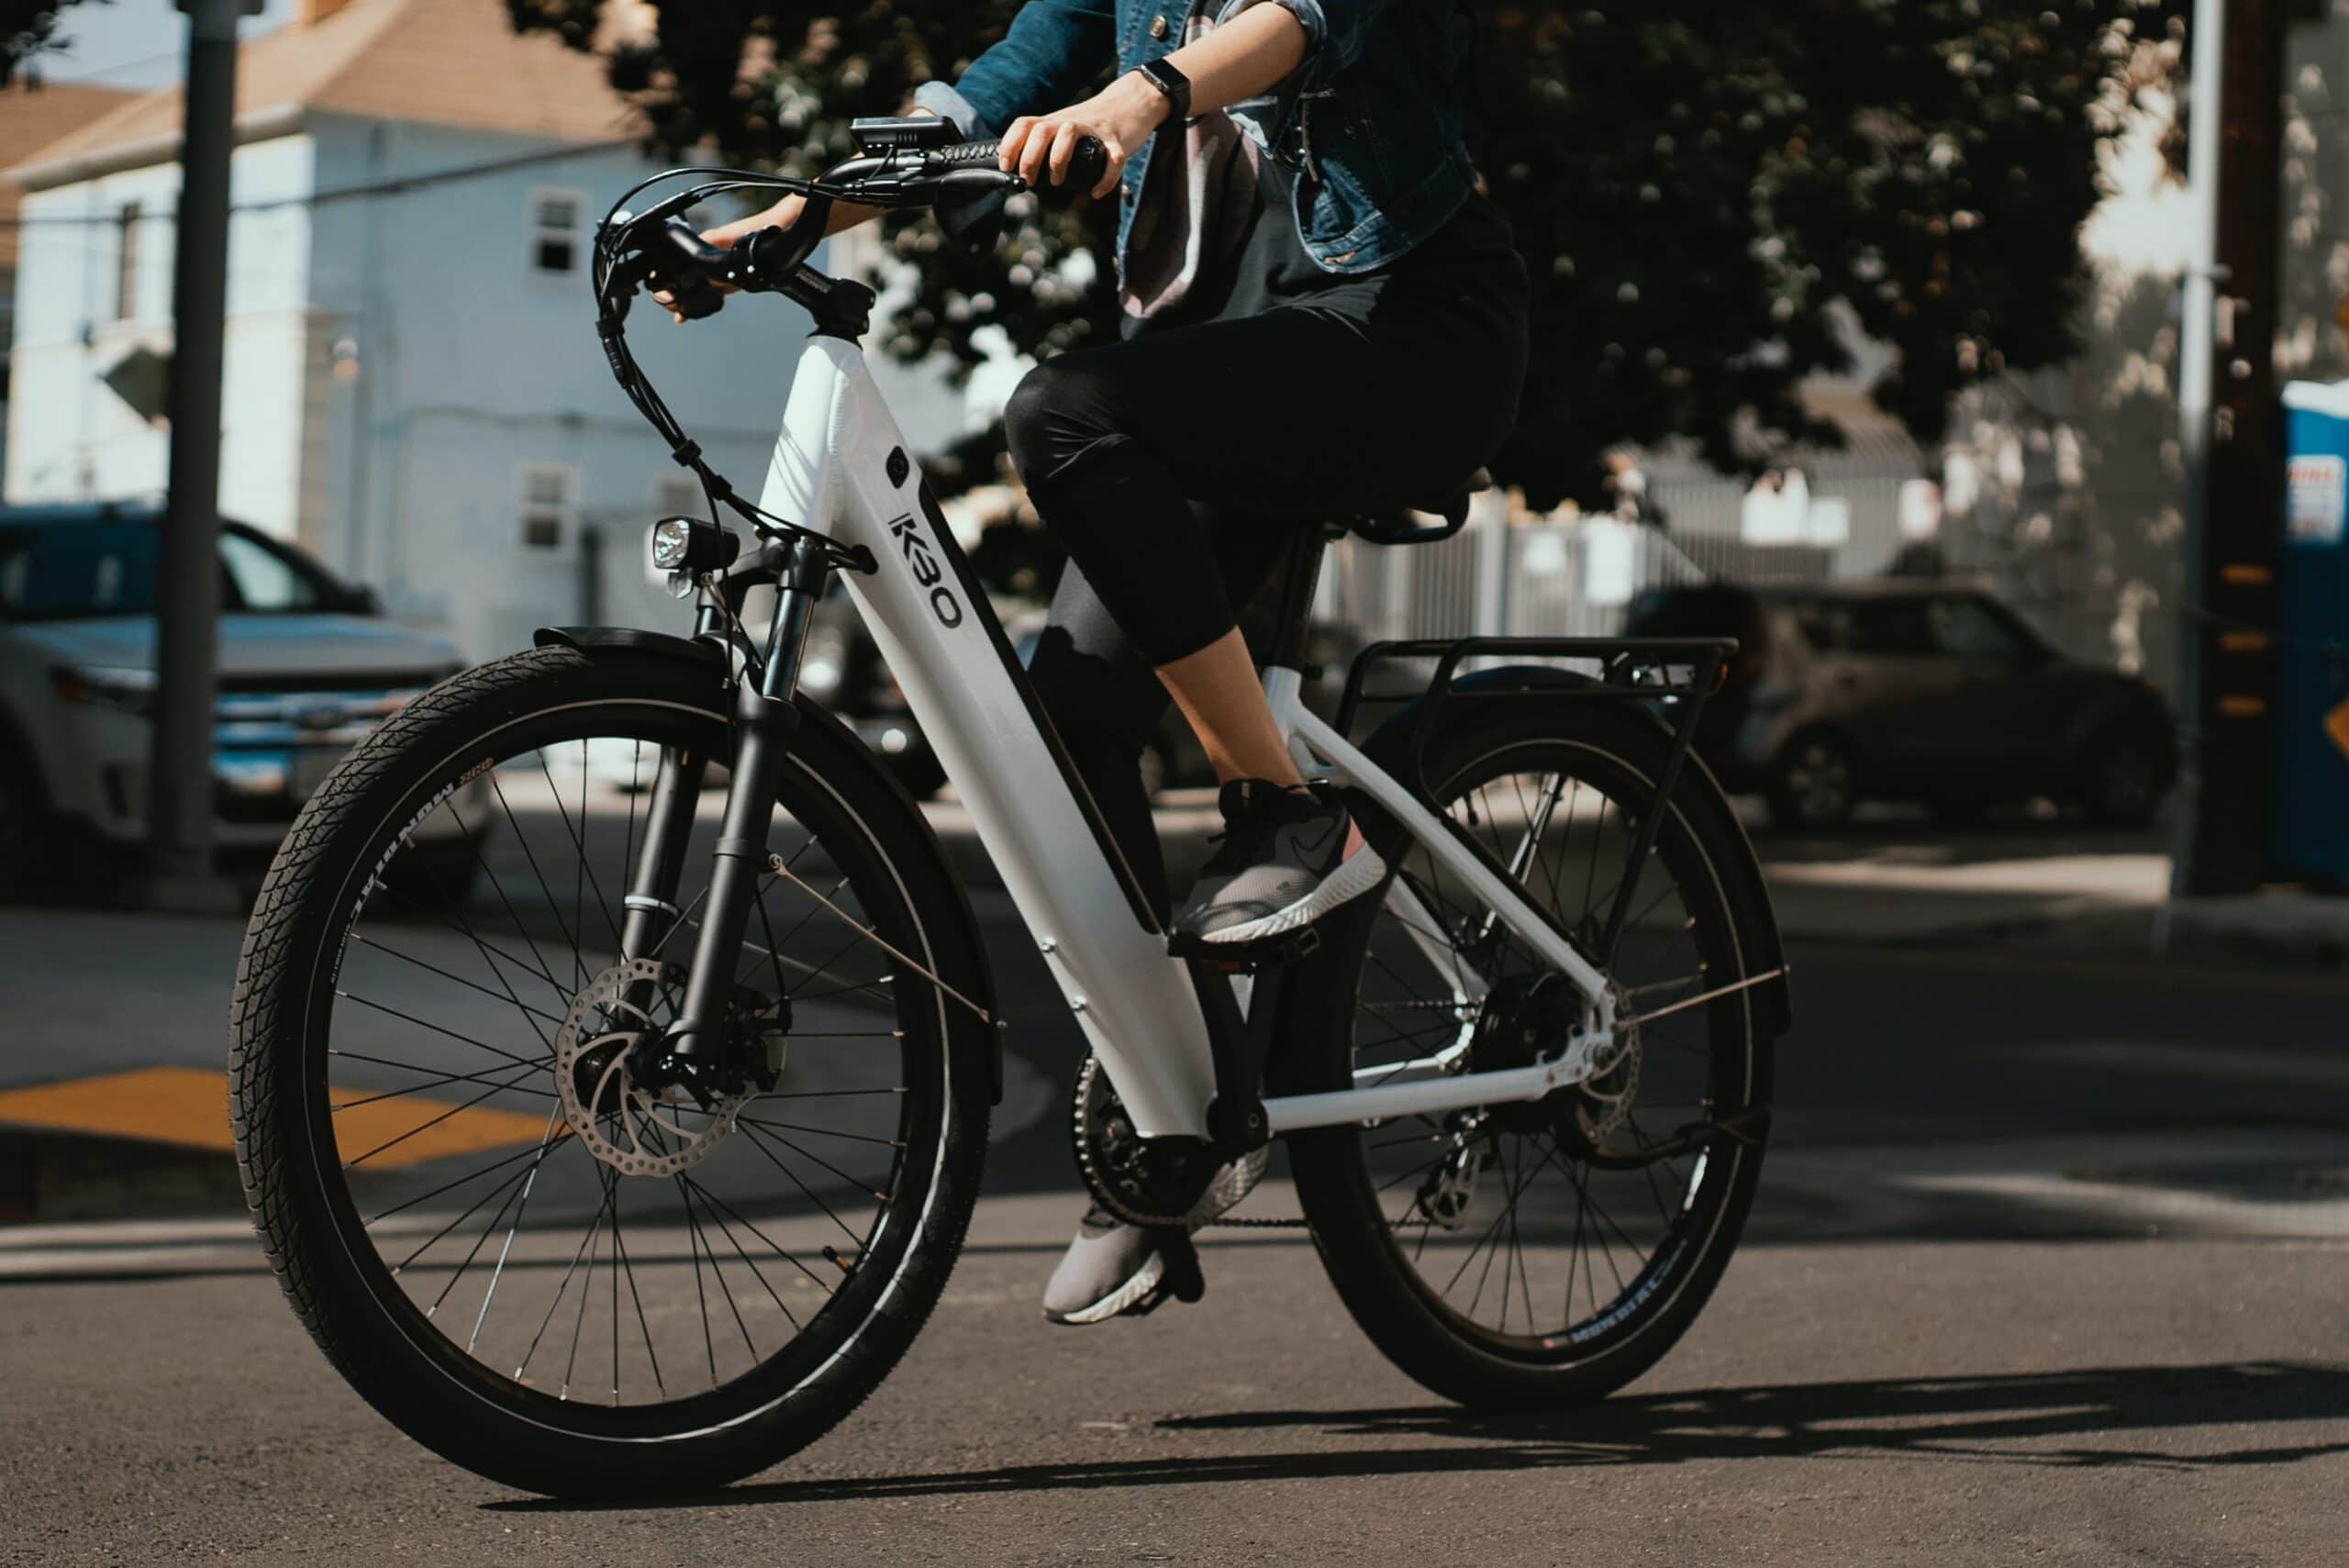 e-bike - kbo bike kXP41LVdcv0 unsplash scaled - Život na e-biku uľahčí bicyklovanie do kopca aj proti vetru